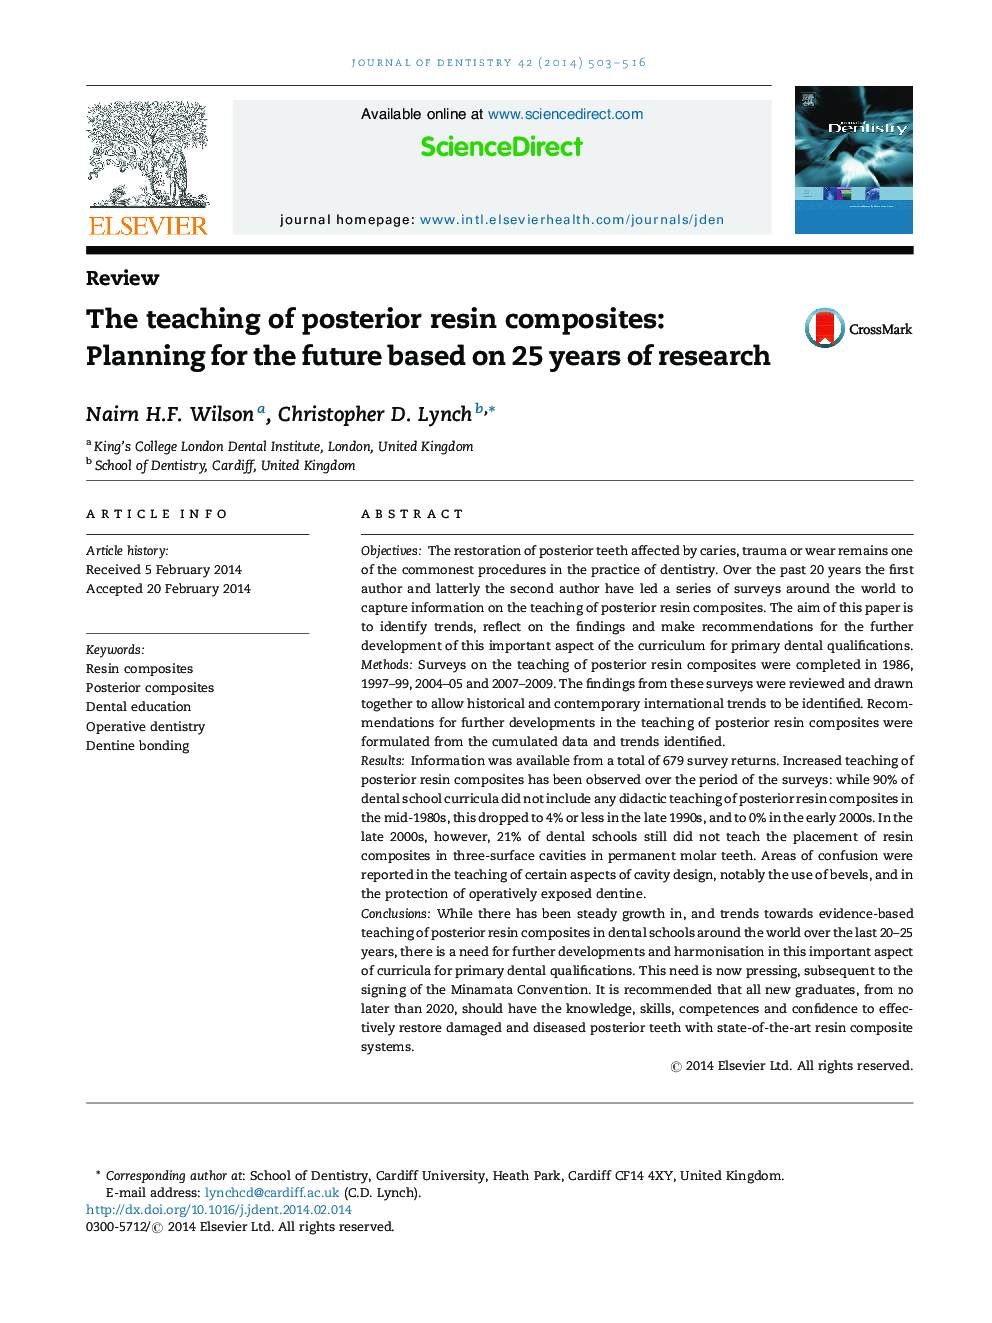 آموزش کامپوزیت رزین خلفی: برنامه ریزی برای آینده بر اساس 25 سال تحقیق 